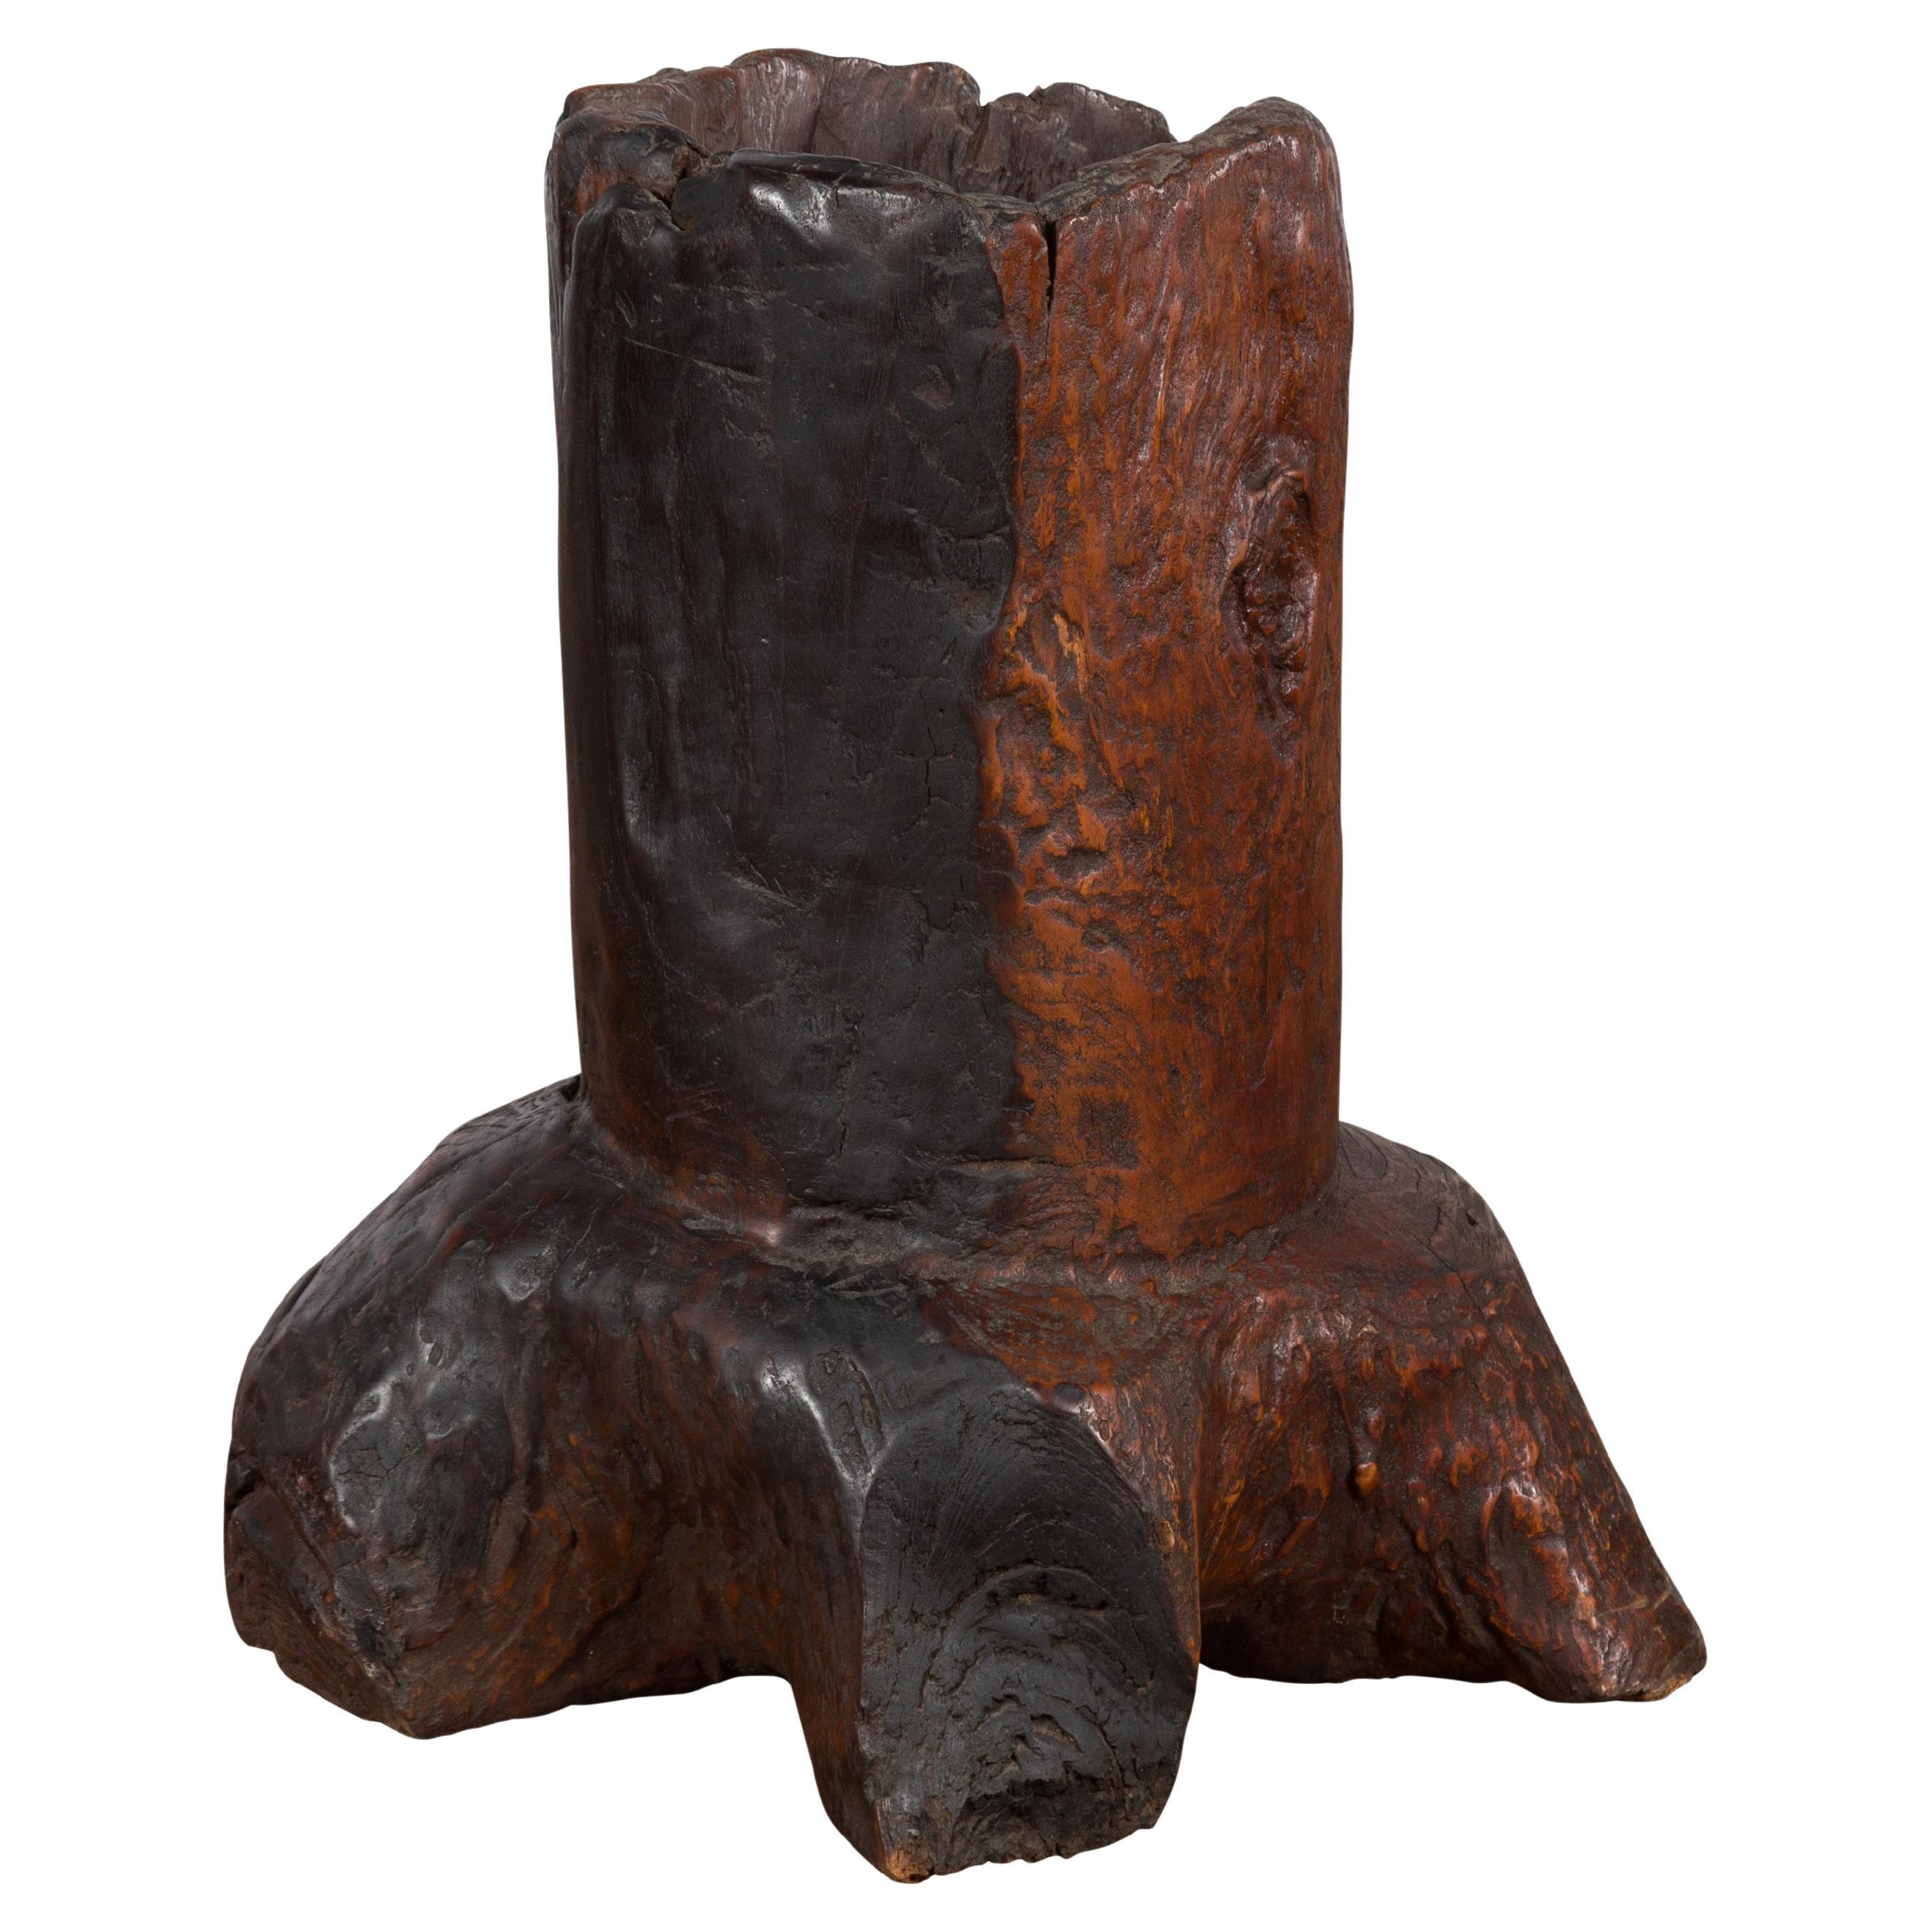 Antikes asiatisches Pflanzgefäß aus Teakholz im Volksstil, ursprünglich als Mortar verwendet